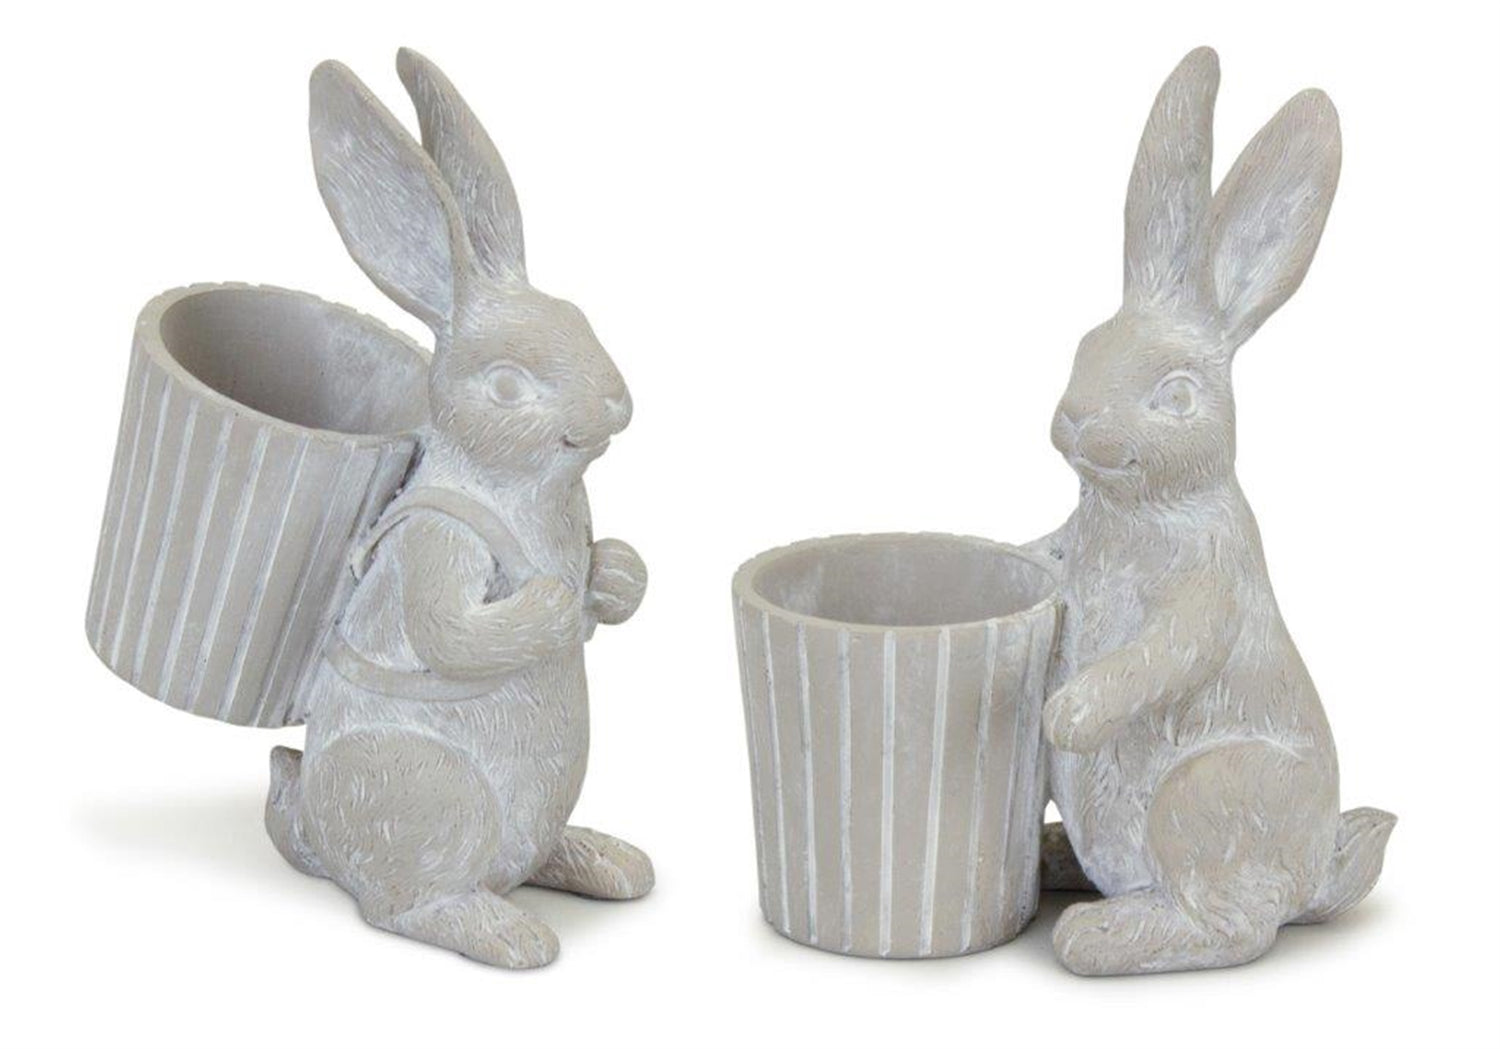 Bunny Pot (Set of 2) 5.75"H, 6"H Resin